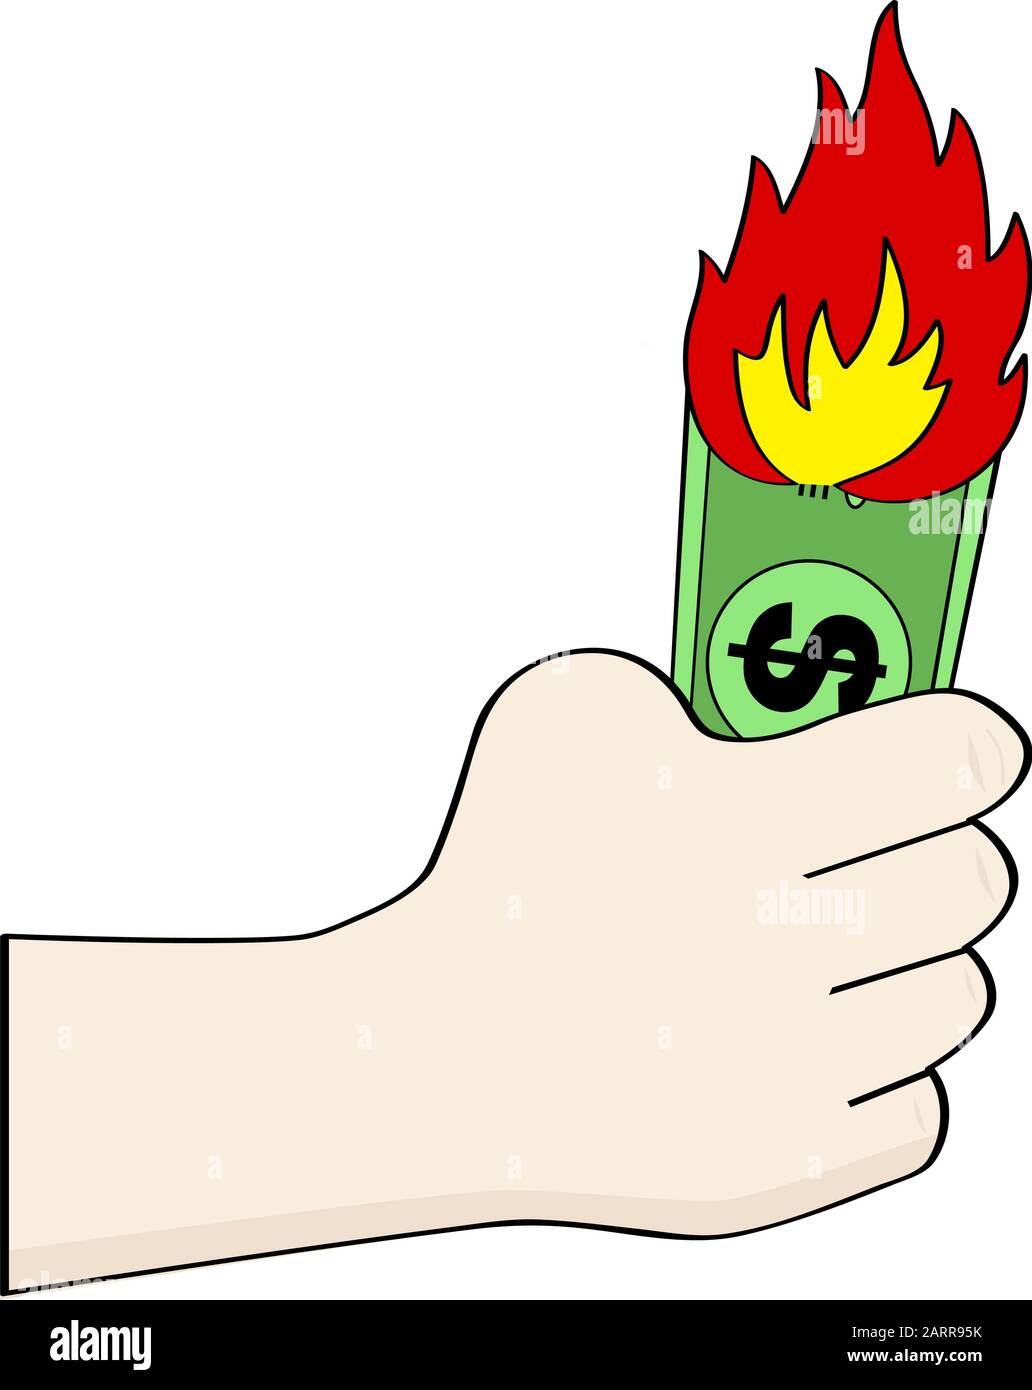 Cartoon-Illustration, die eine Hand zeigt, die eine brennende Dollar-Rechnung hält Stock Vektor